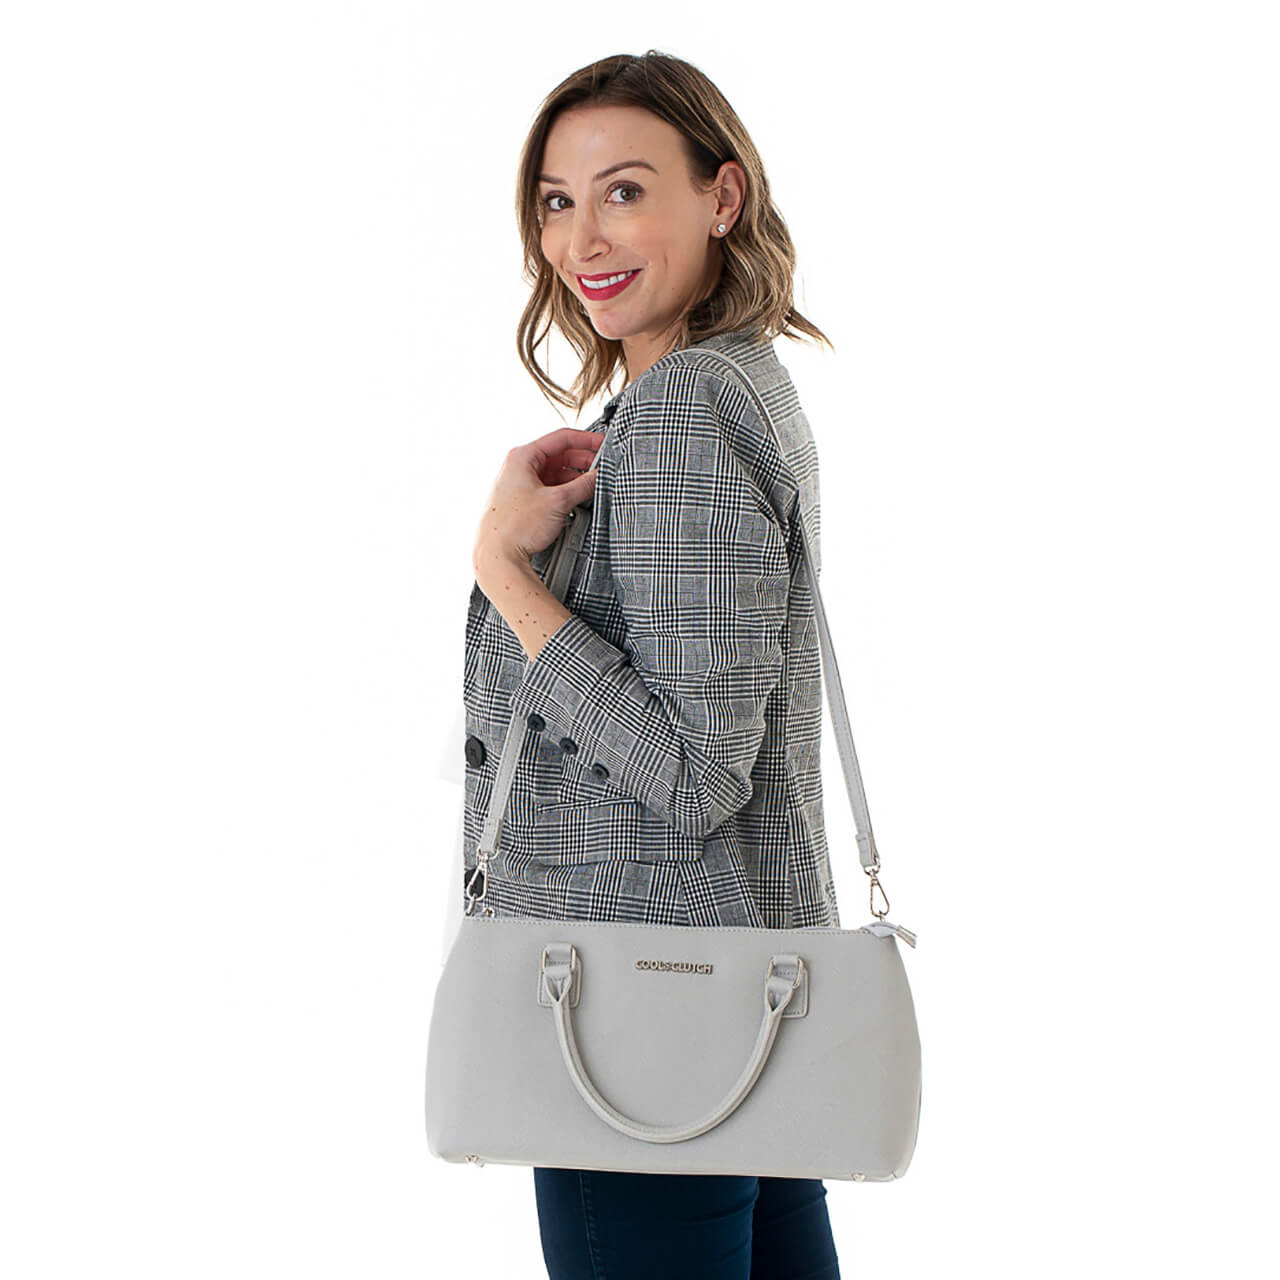 Dorrie Cool Clutch (Grey) Cooler bags - Cool Clutch cooler bag handbag insulated wine lunch handbags